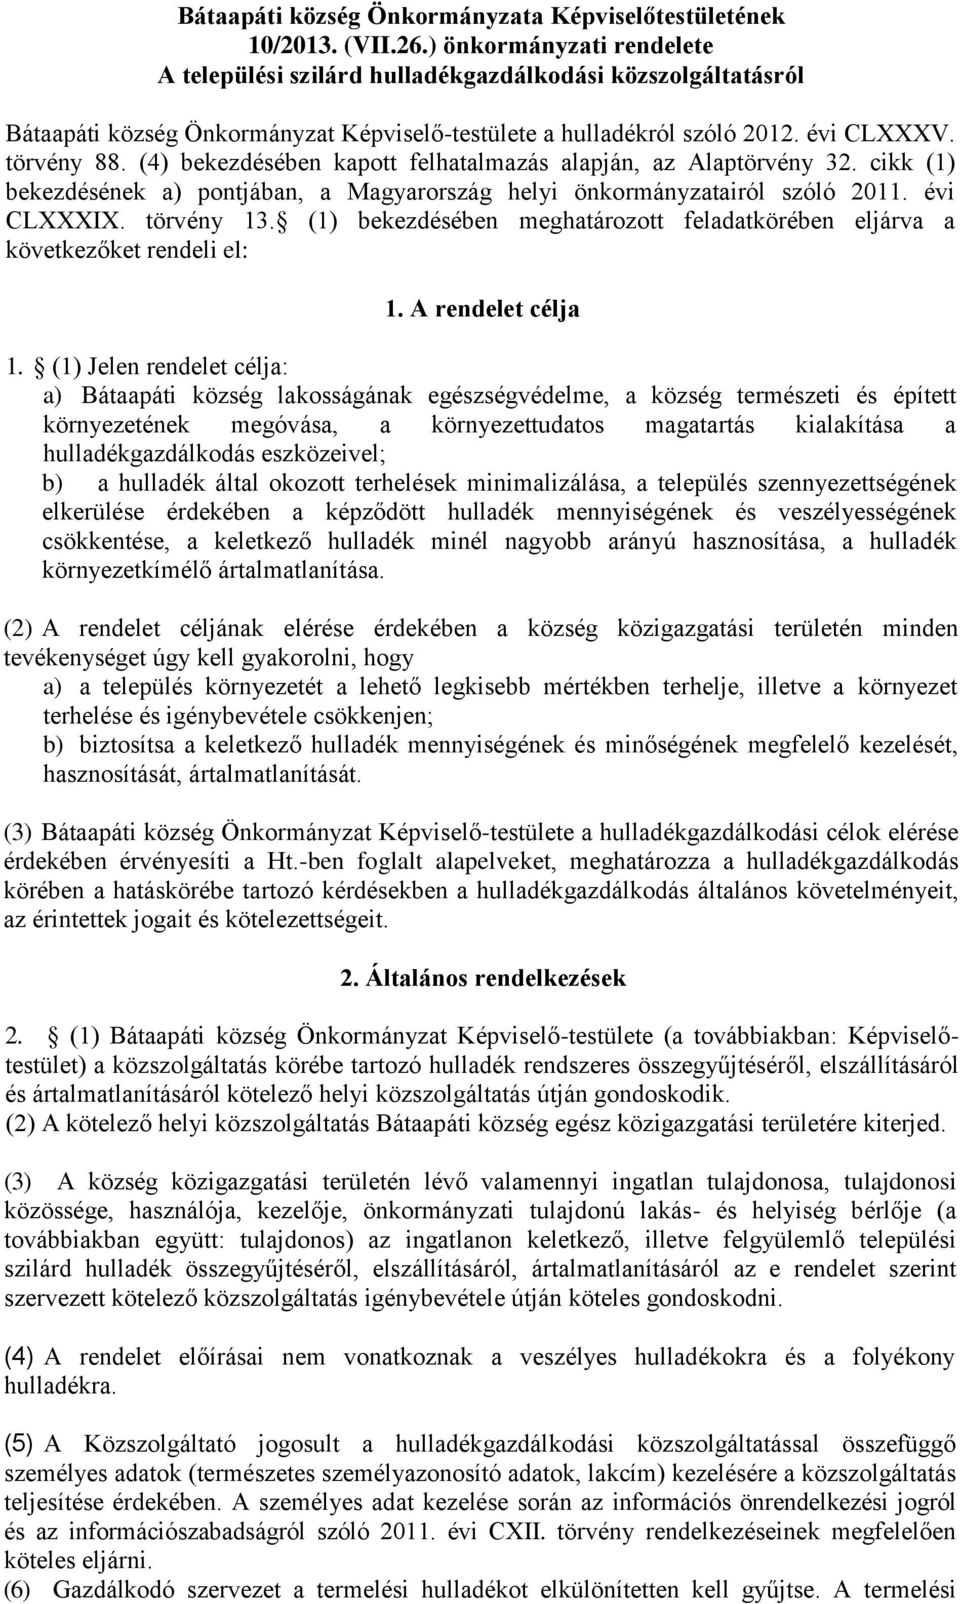 (4) bekezdésében kapott felhatalmazás alapján, az Alaptörvény 32. cikk (1) bekezdésének a) pontjában, a Magyarország helyi önkormányzatairól szóló 2011. évi CLXXXIX. törvény 13.